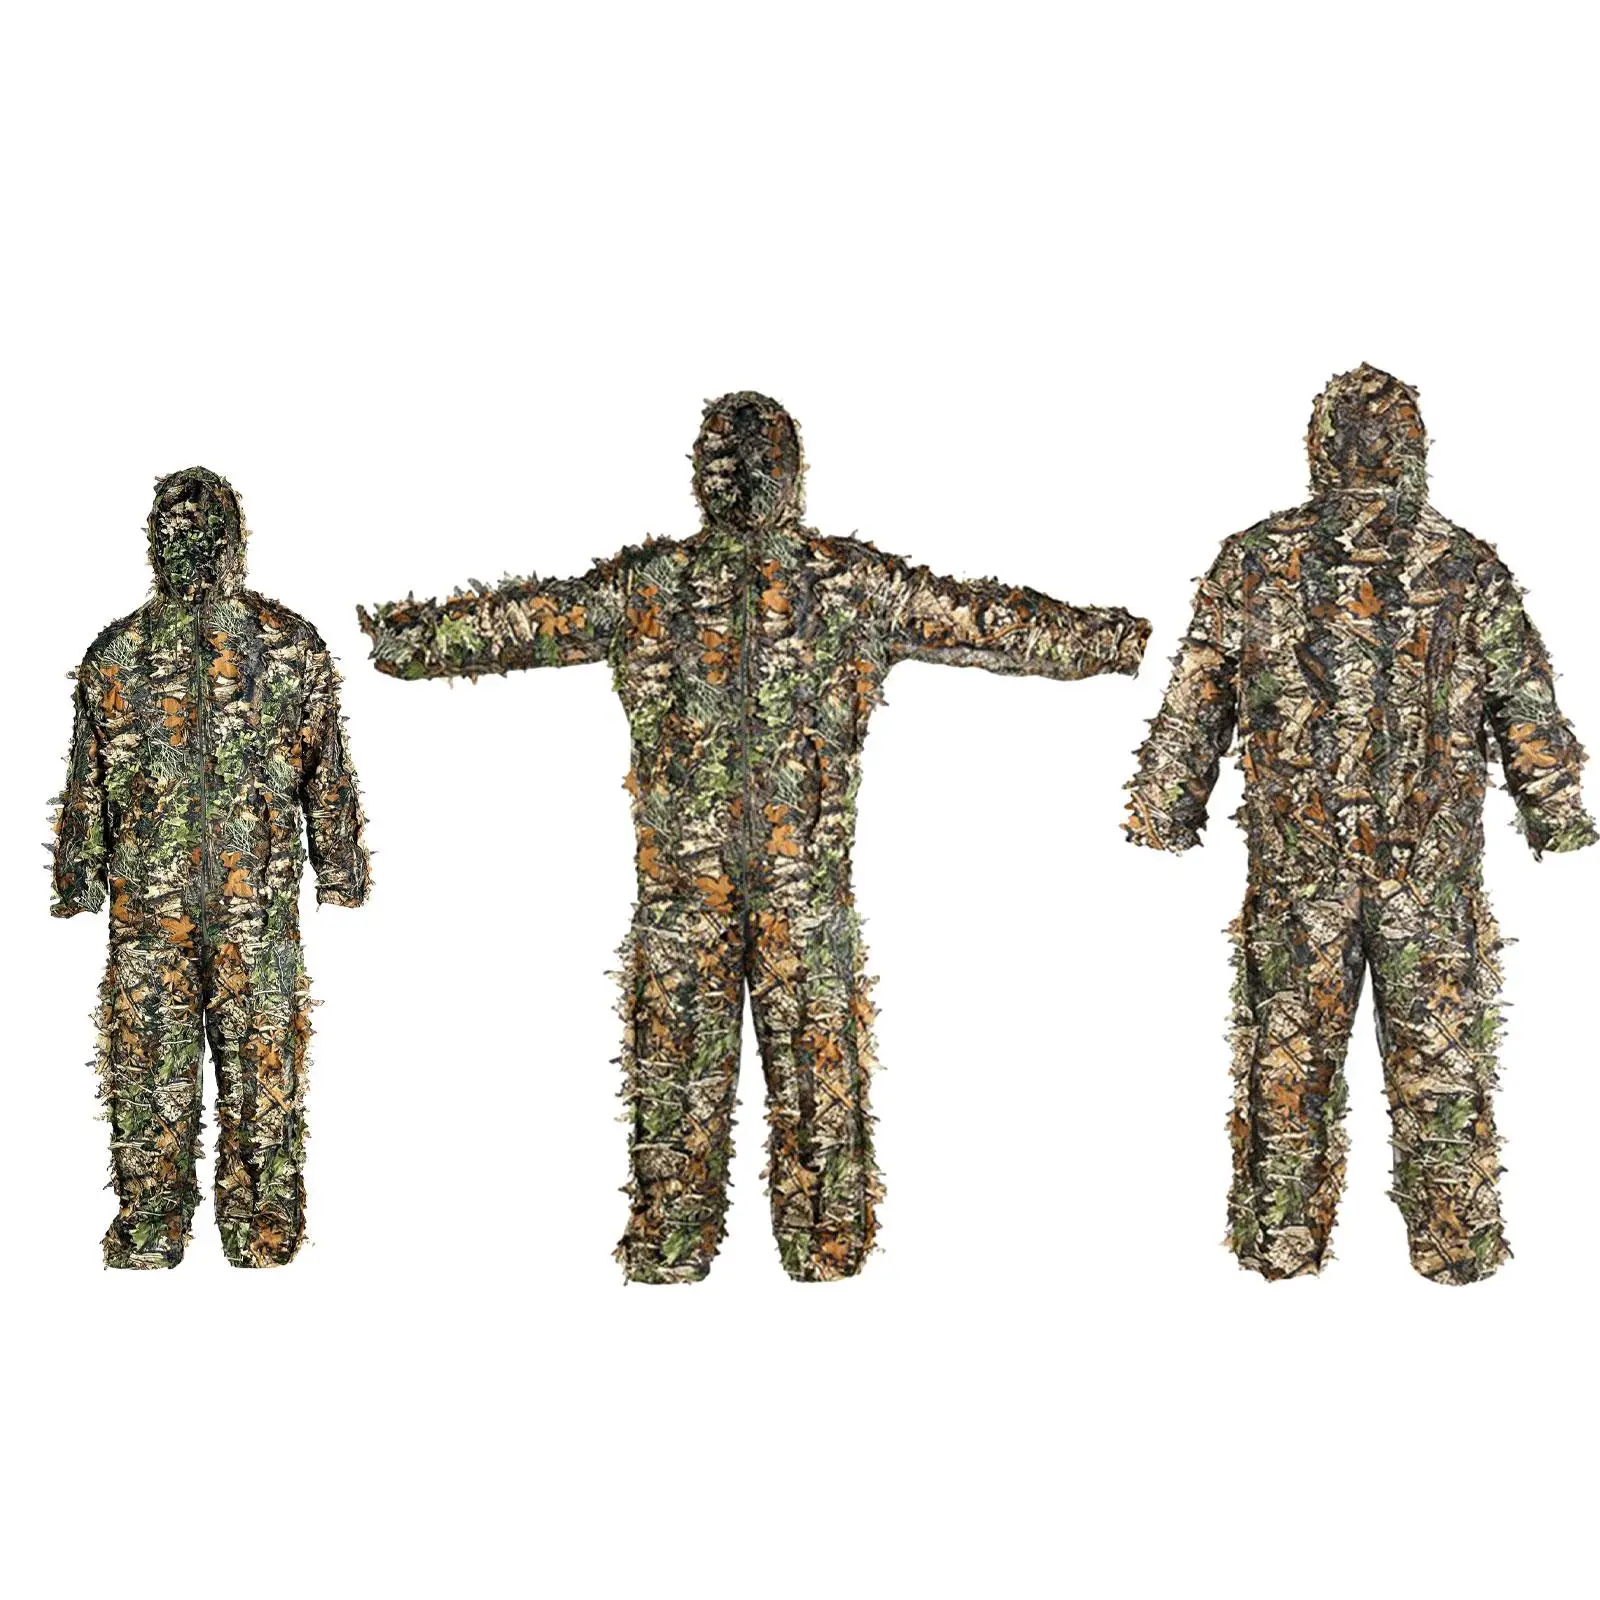 

Костюм Ghillie, охотничья одежда, дышащая камуфляжная одежда с капюшоном для индейки, для игр на открытом воздухе, для наблюдения за птицами в лесу